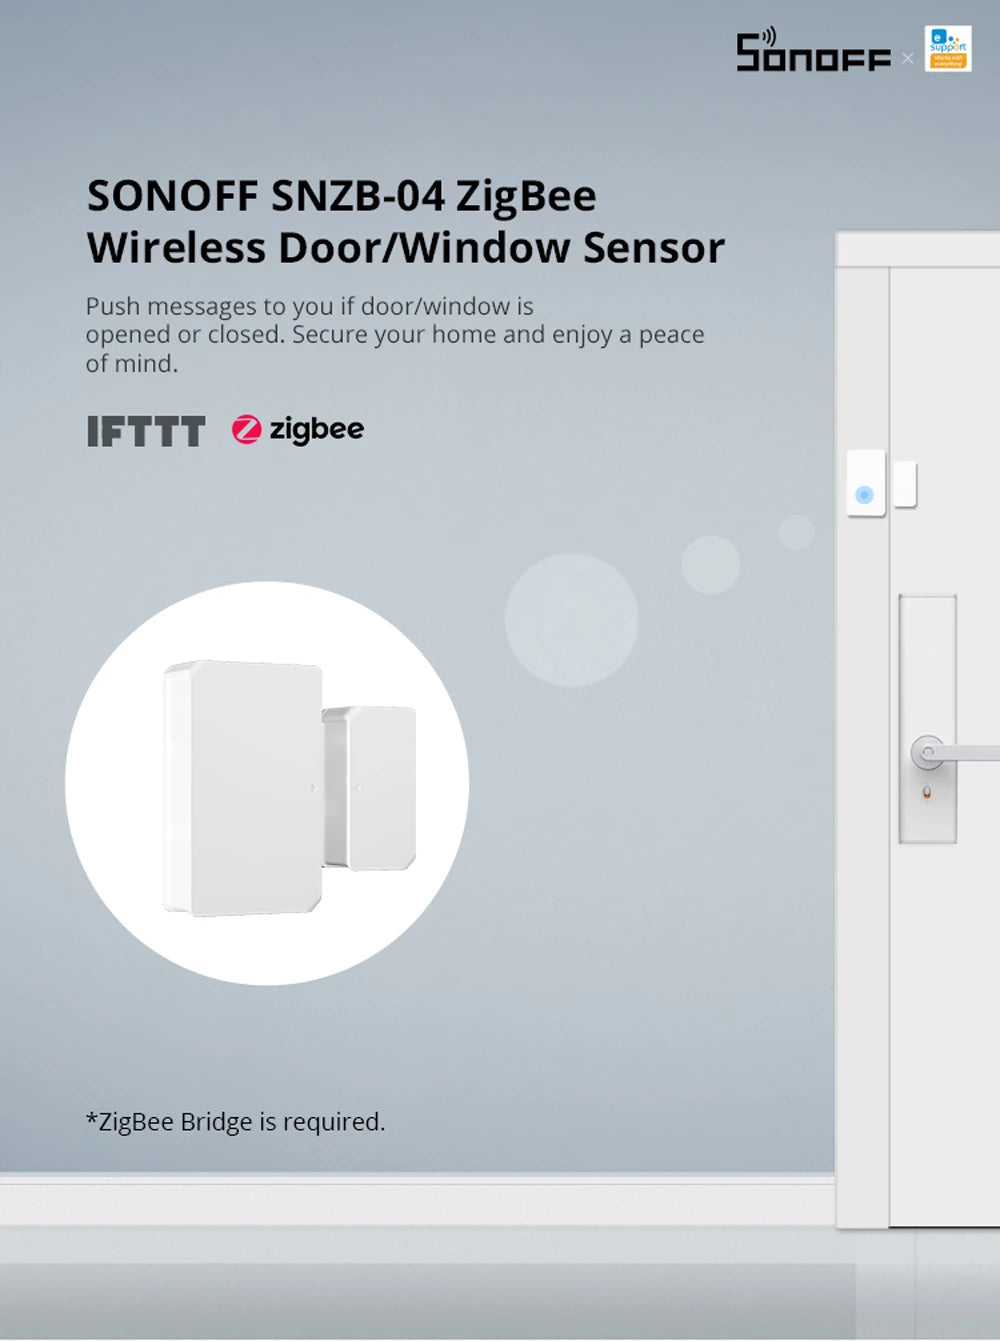 Sonoff Zigbee Door/Window Sensor